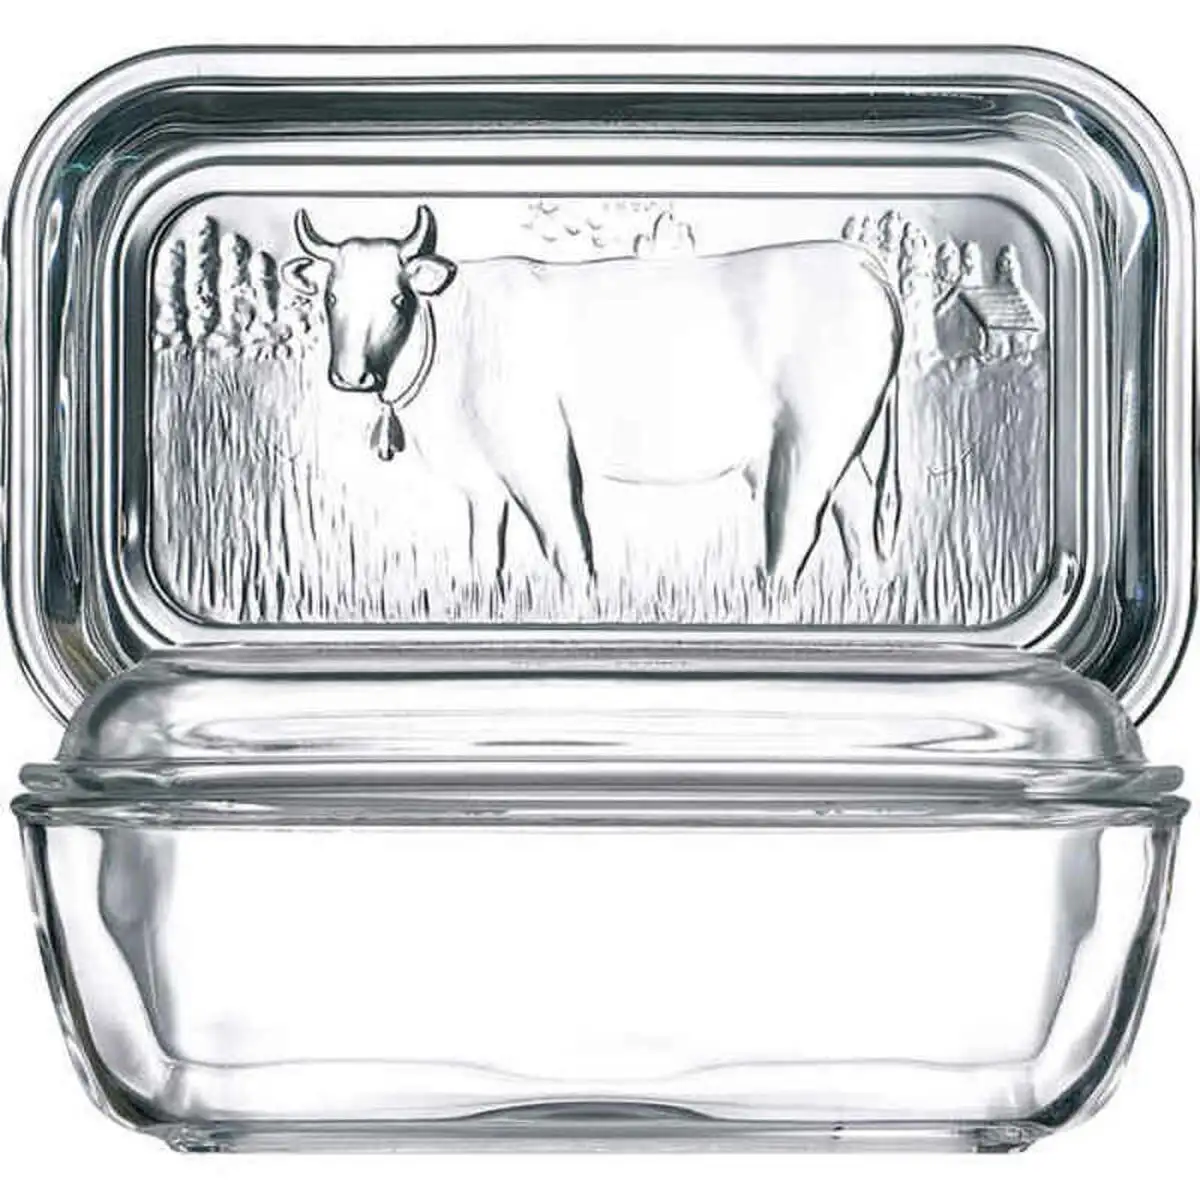 Beurrier luminarc vaca blanc verre 17 x 7 cm _3237. DIAYTAR SENEGAL - Là où Chaque Produit est une Trouvaille Unique. Découvrez notre boutique en ligne et trouvez des articles qui vous distinguent par leur originalité.